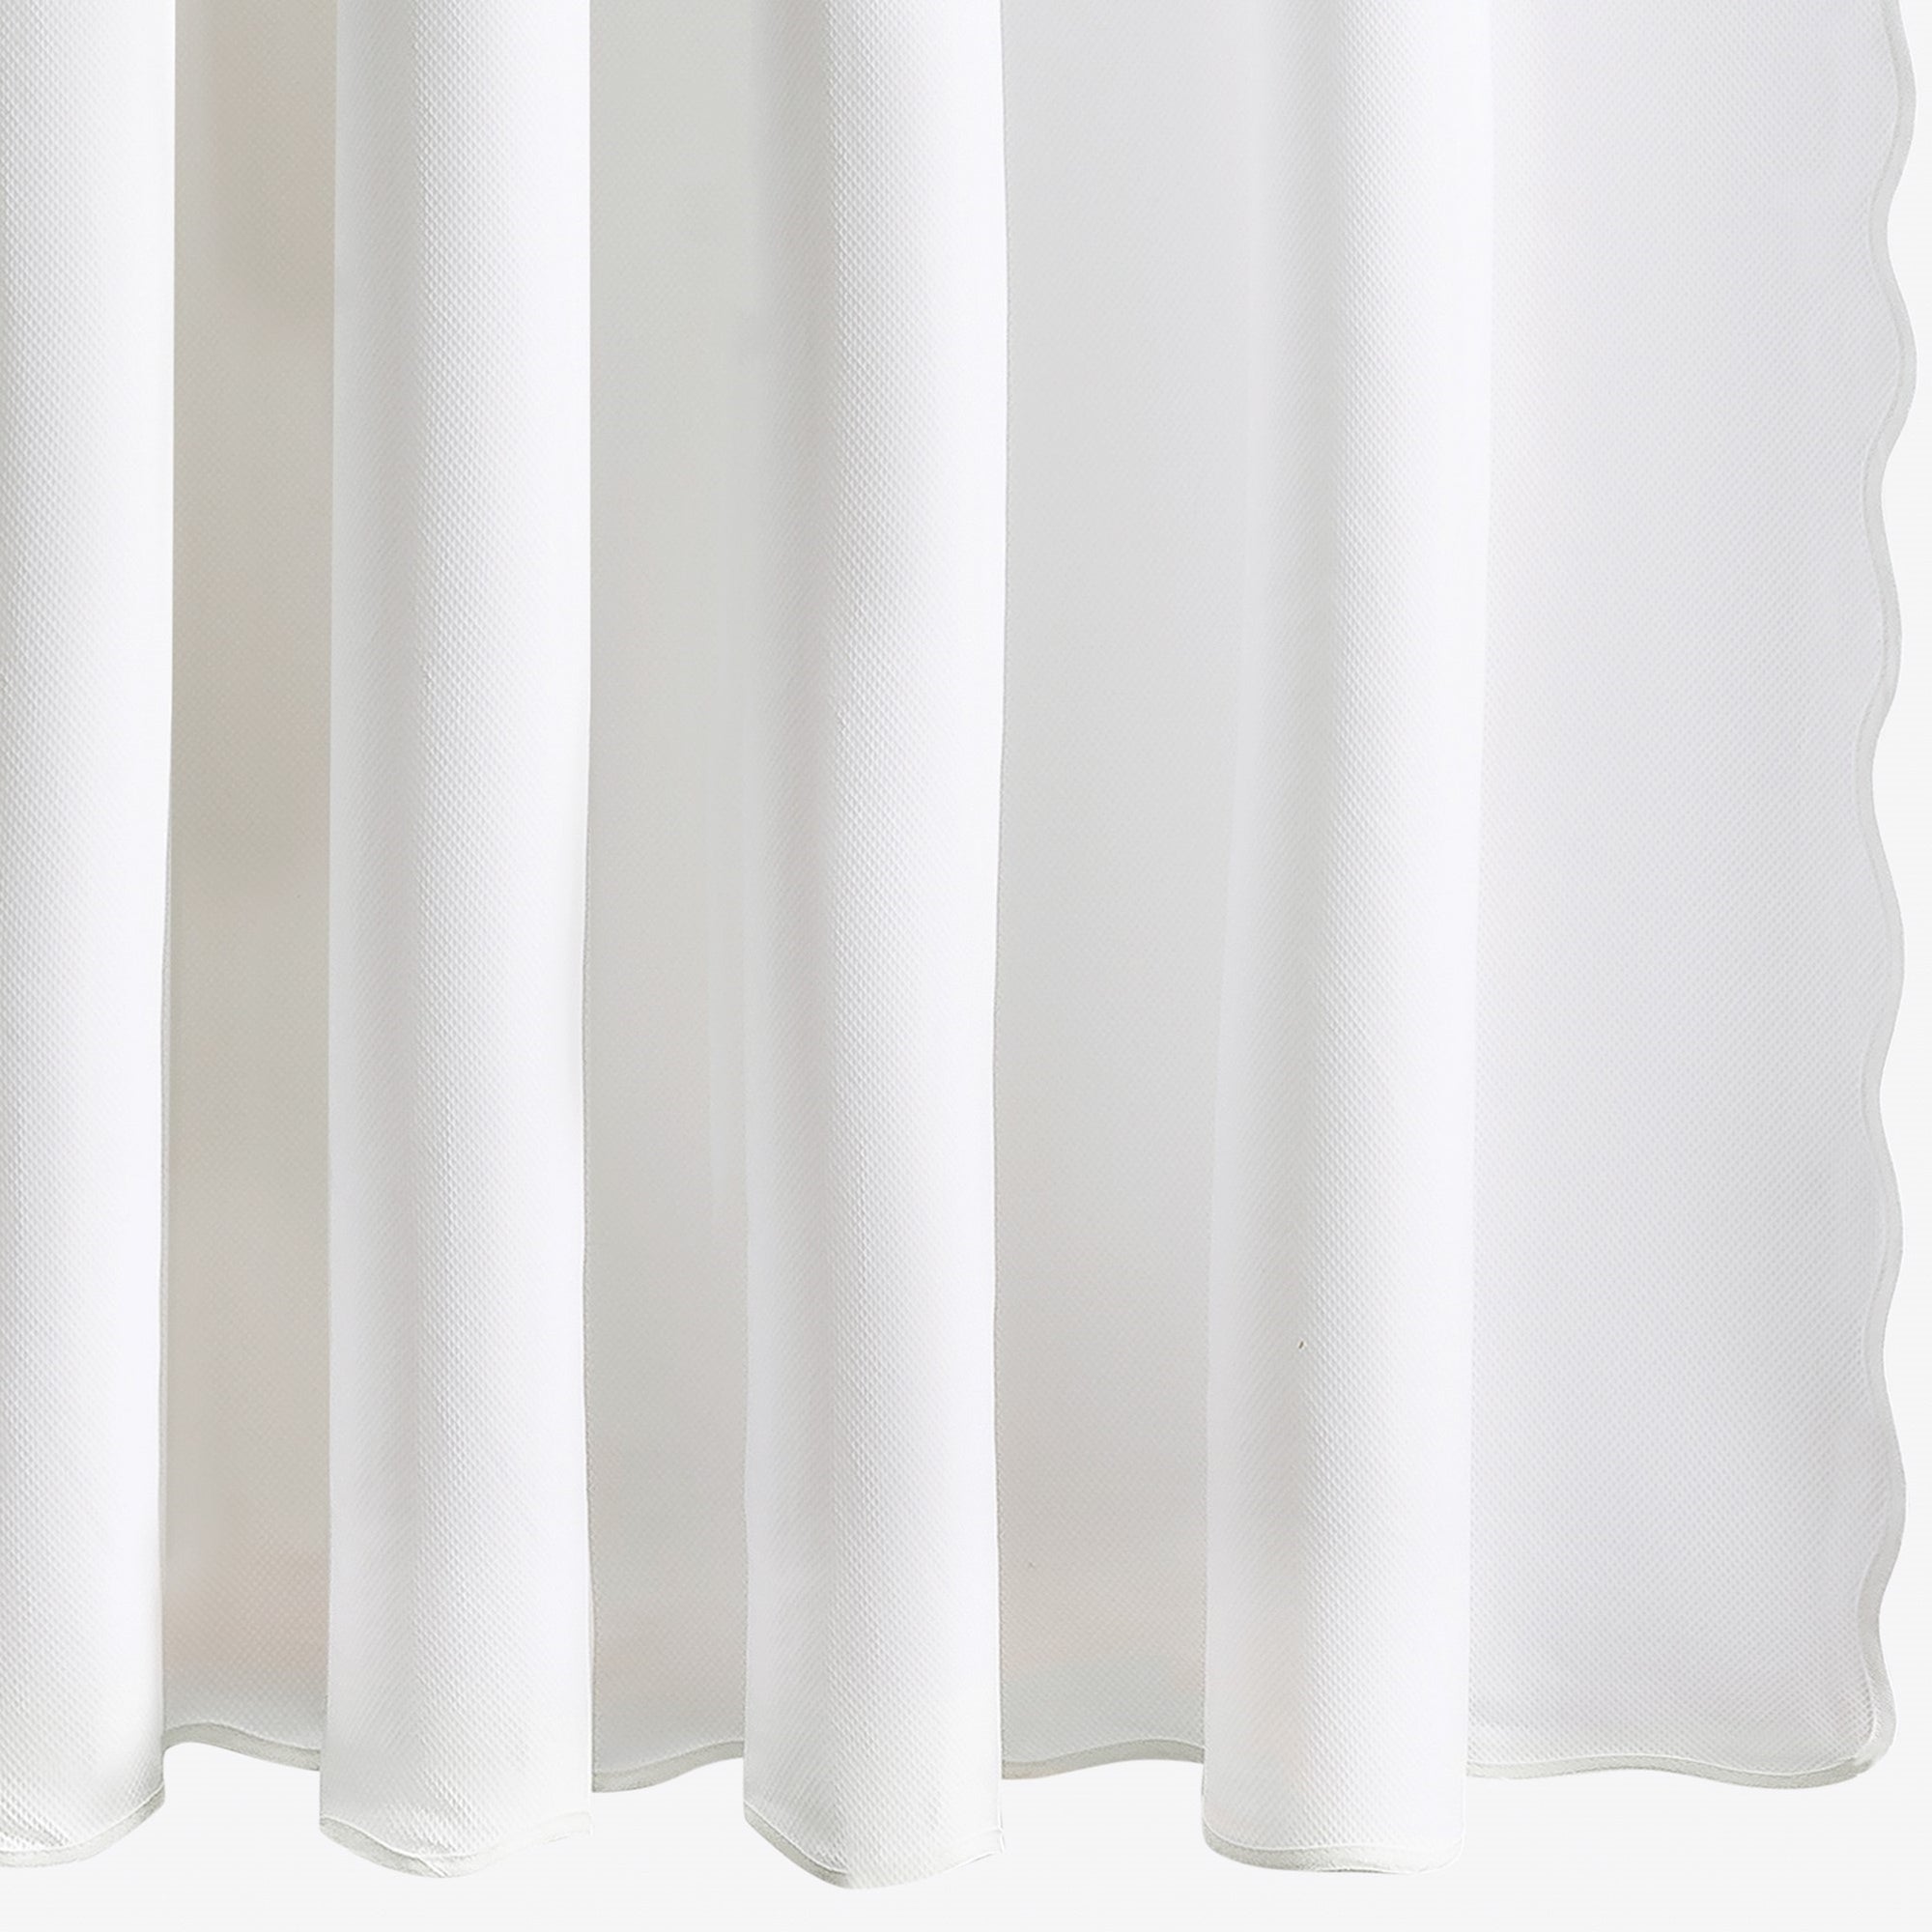 Silo Image of Matouk Camilla Pique Scallop Shower Curtain in White Color